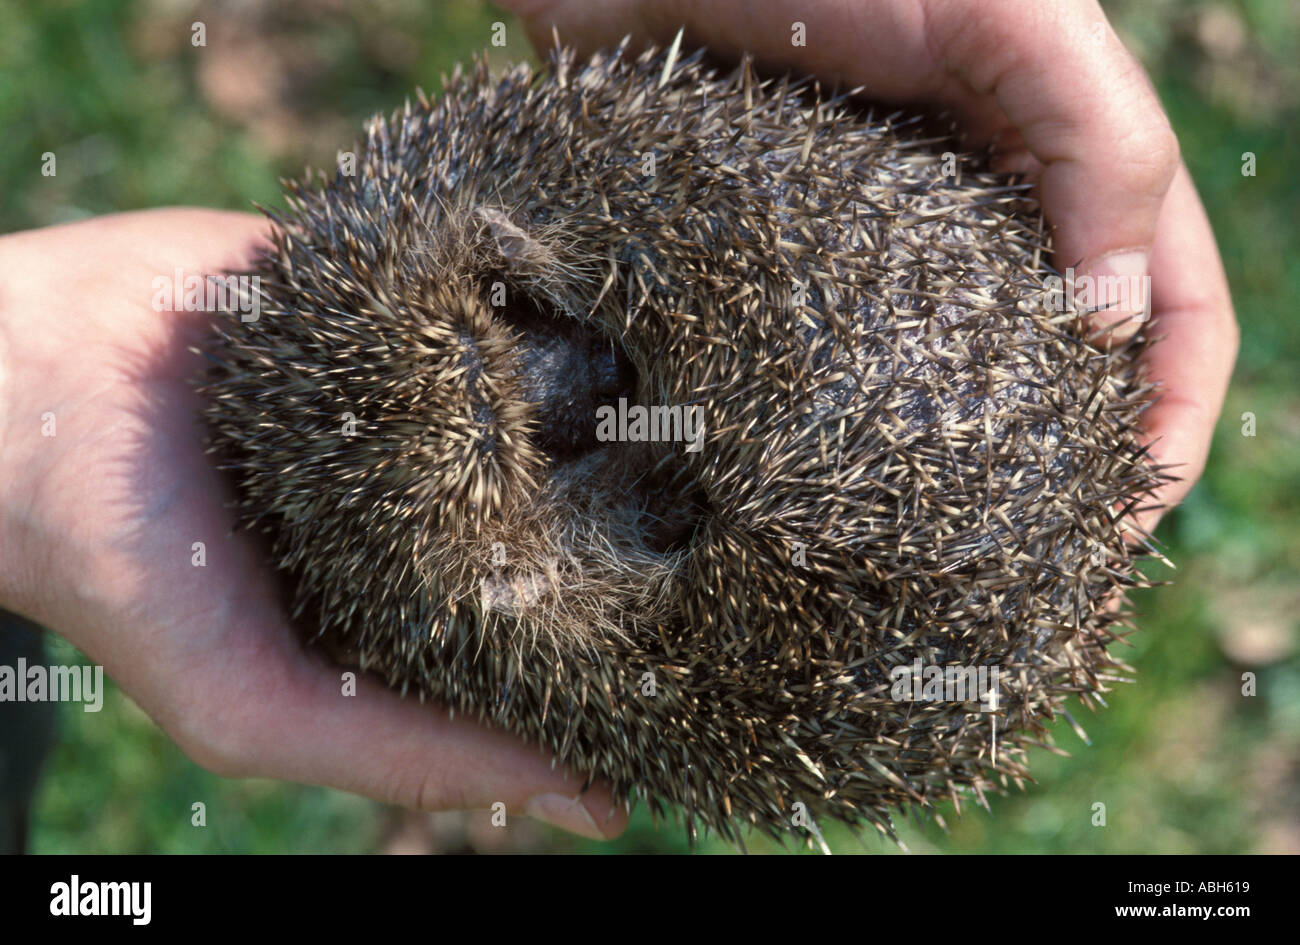 Hedgehog lovée dans la balle dans les mains de personnes Banque D'Images